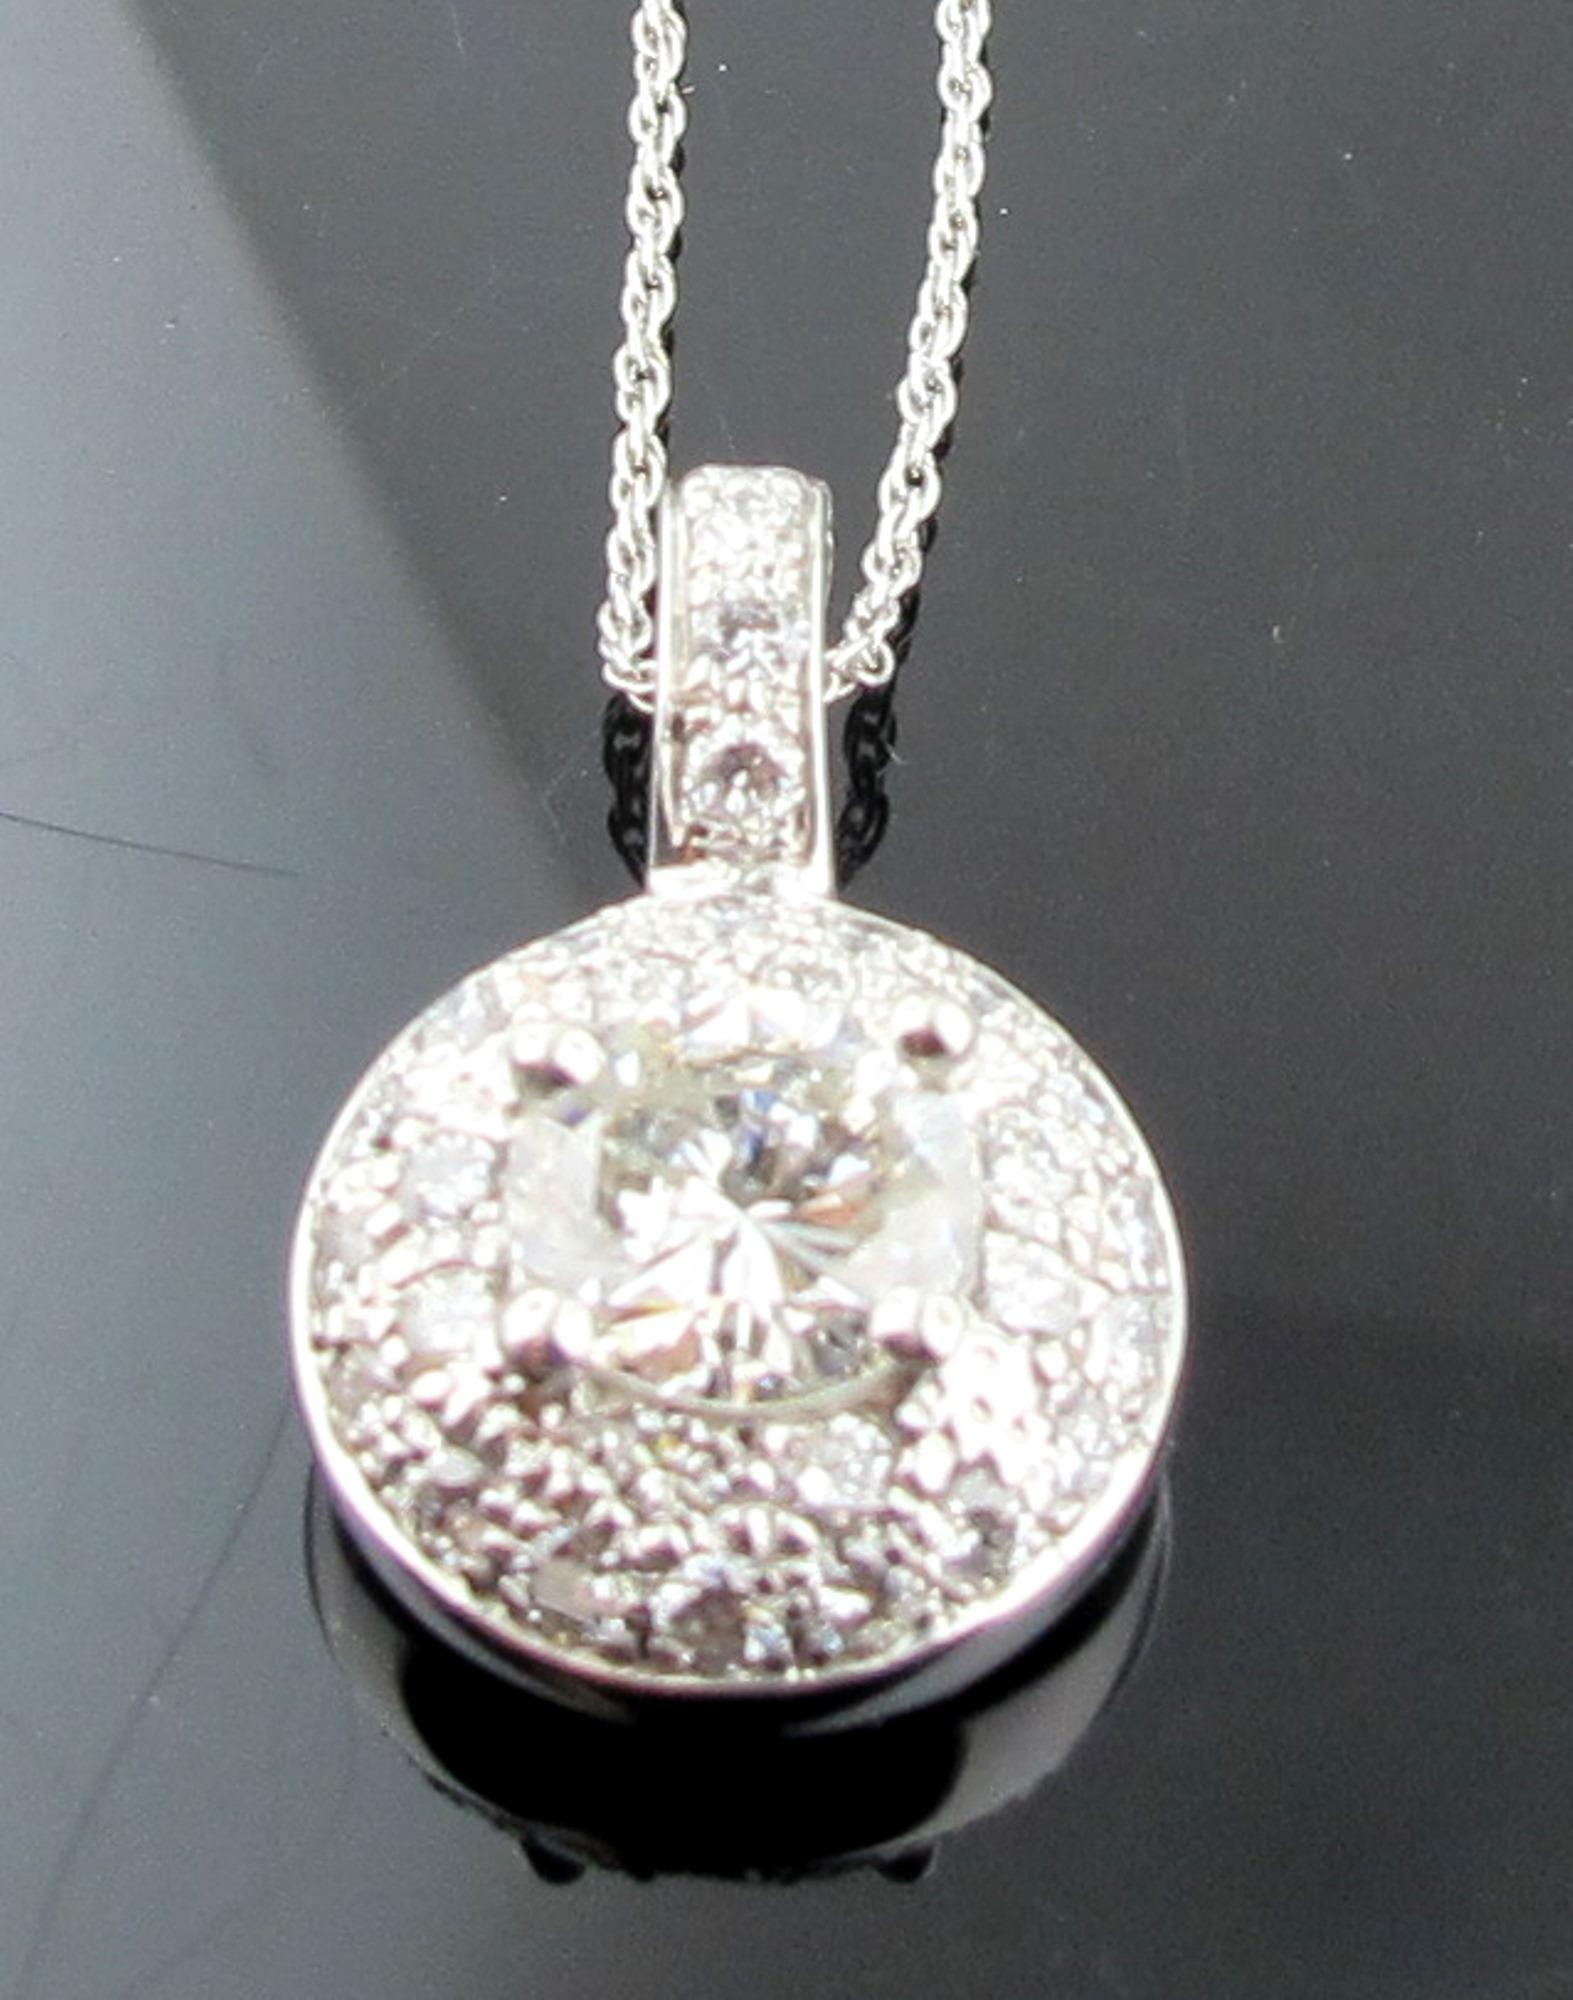 In 14 Karat Weißgold gefasst ist ein runder Diamant im Brillantschliff mit einem Gewicht von 1,16 Karat, Farbe J, Reinheit SI-1.  Außerdem sind 44 runde Diamanten im Brillantschliff mit einem Gesamtgewicht von 1,25 Karat enthalten, was einem